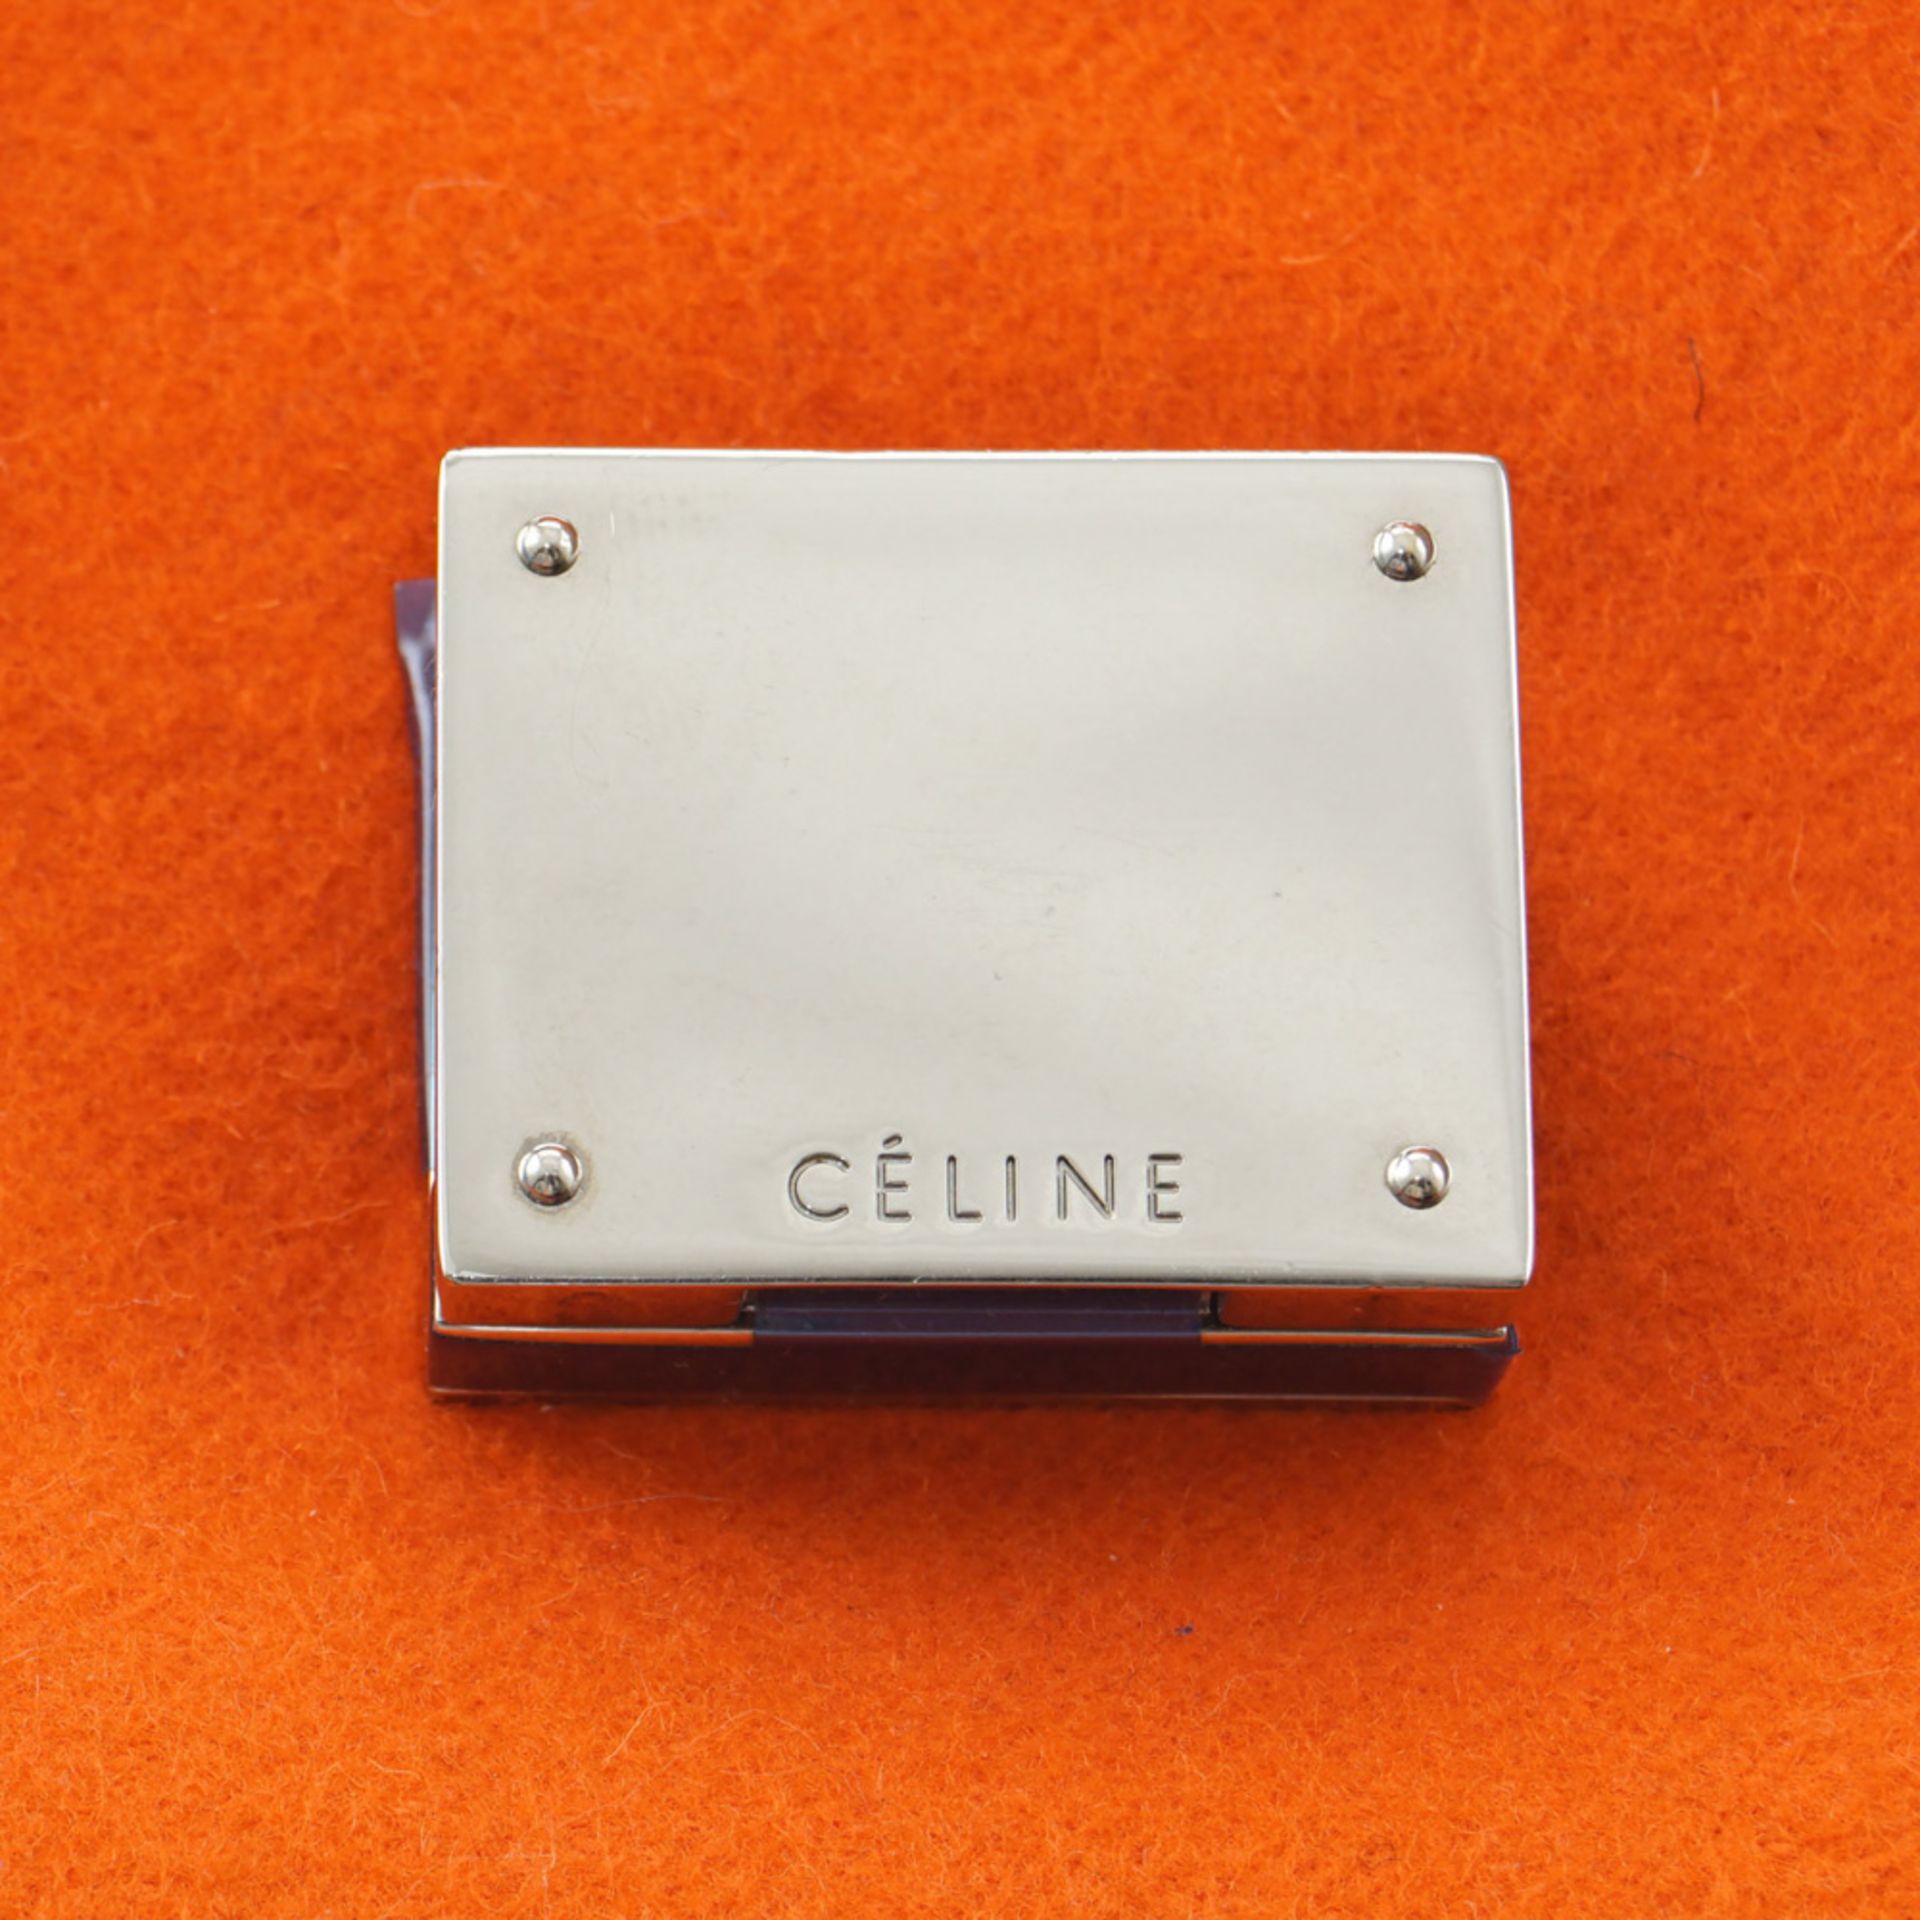 Celine Trapeze Tricolor collection, vintage handbag 30x23x18 cm - Image 3 of 5